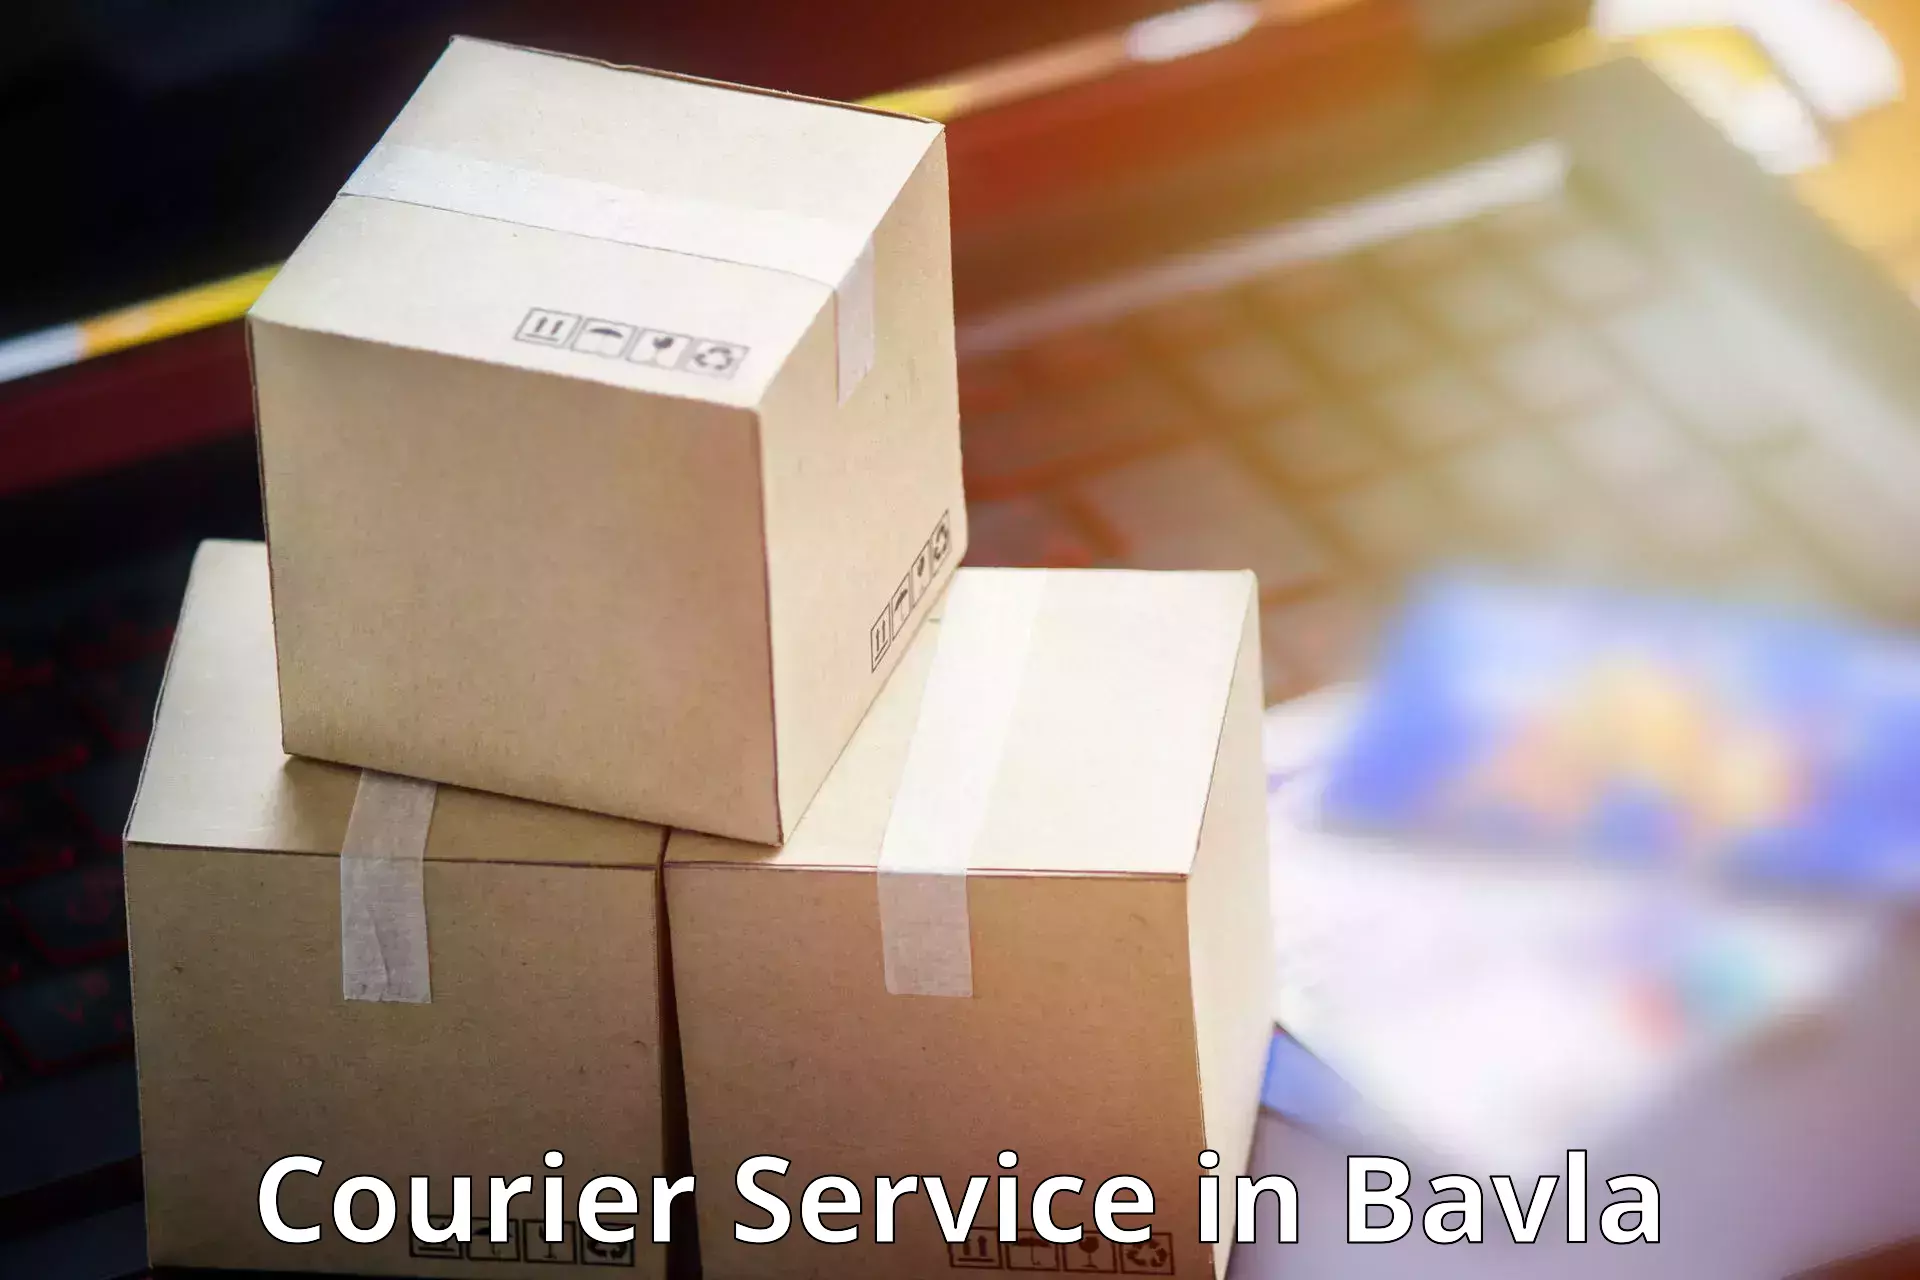 Efficient parcel delivery in Bavla